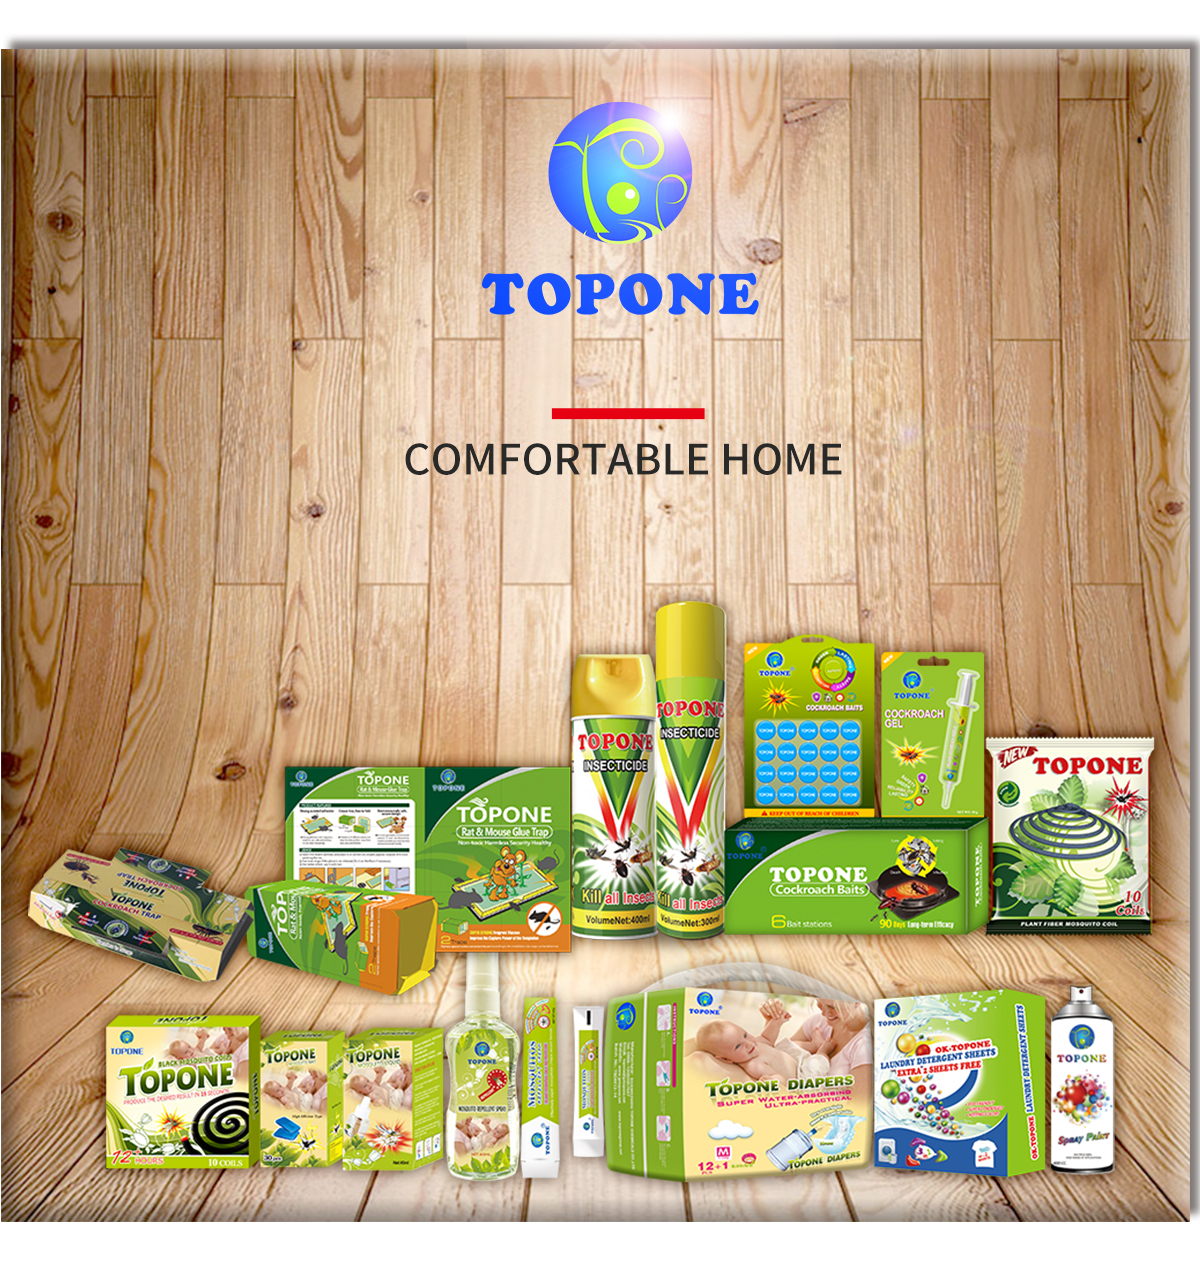 Gamme complète de produits Topone